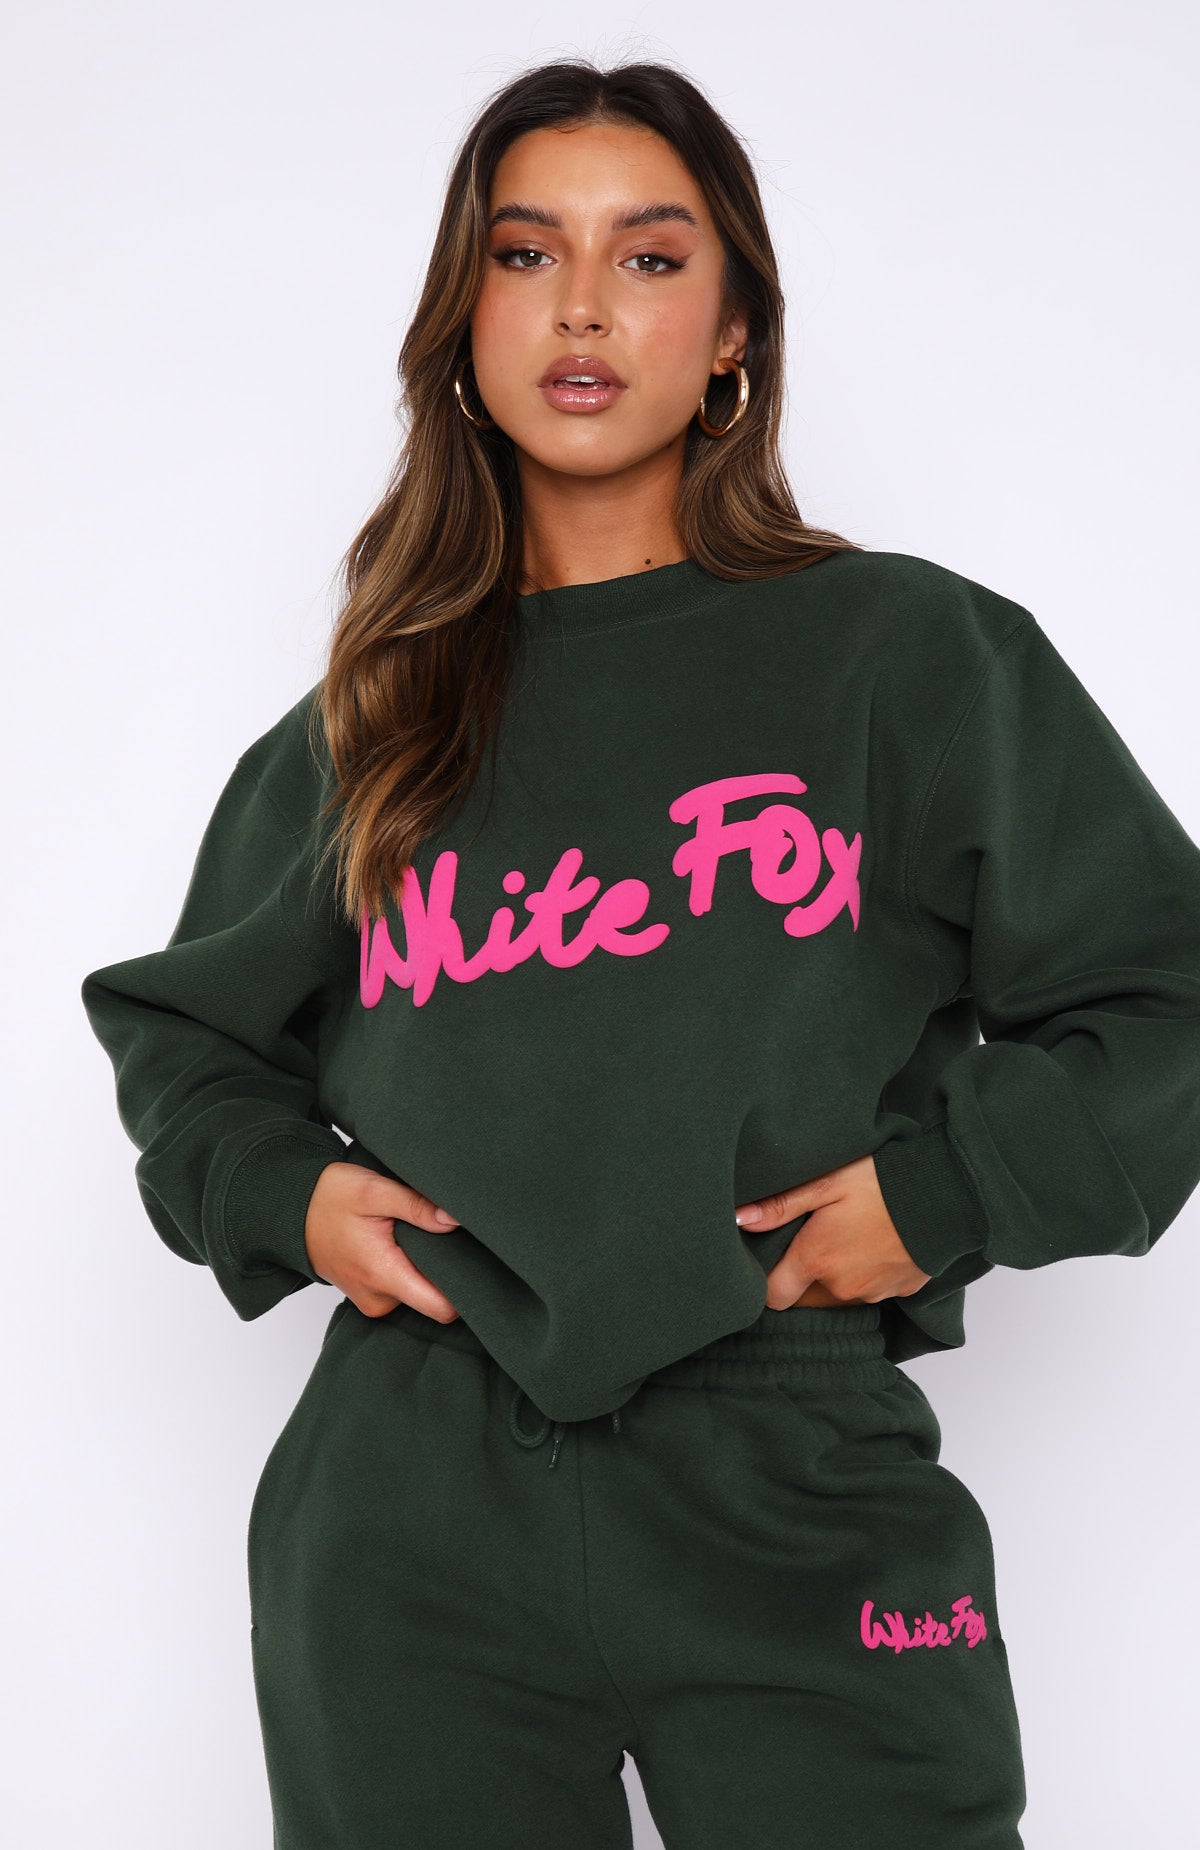 WhiteTrashFabulous/WTF fashions, Sweaters